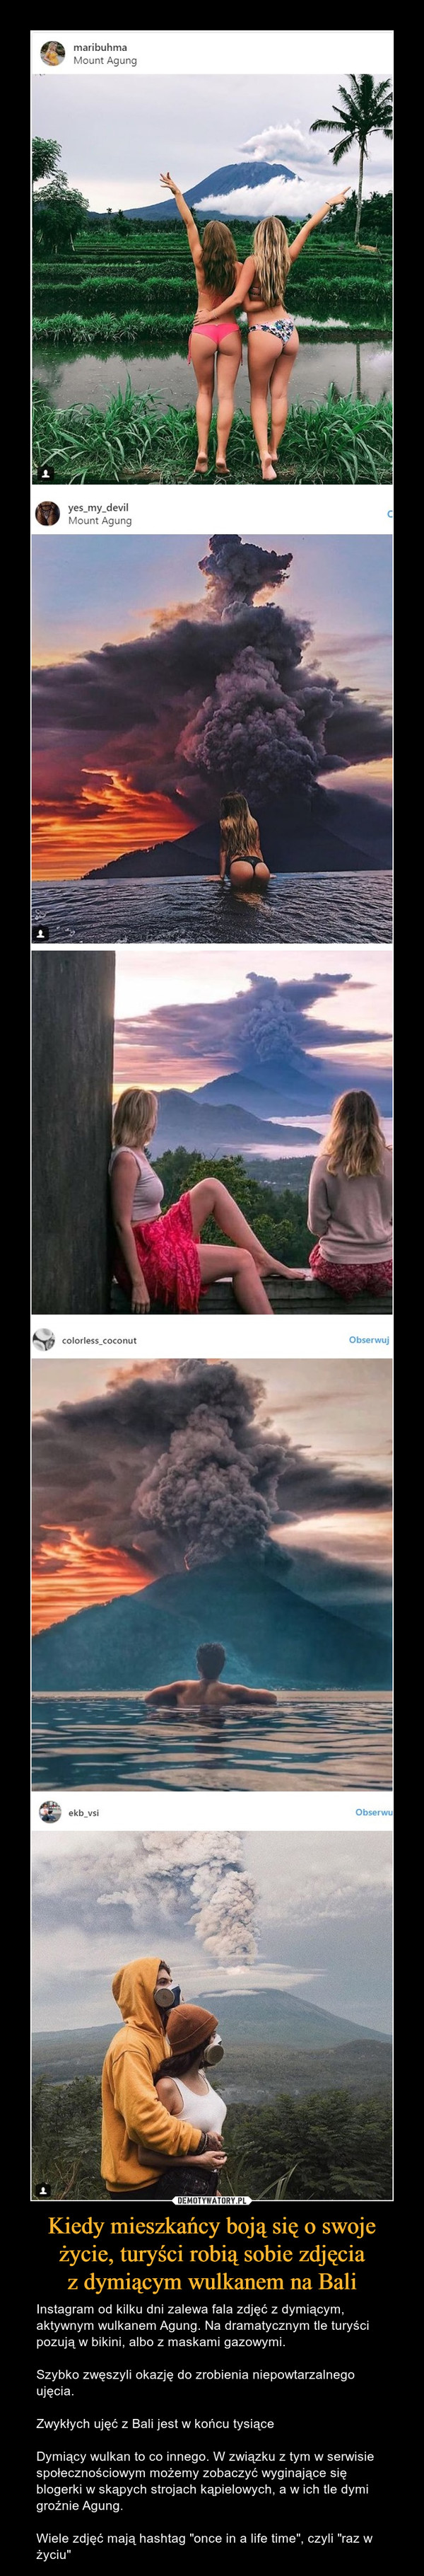 Kiedy mieszkańcy boją się o swoje życie, turyści robią sobie zdjęcia
z dymiącym wulkanem na Bali